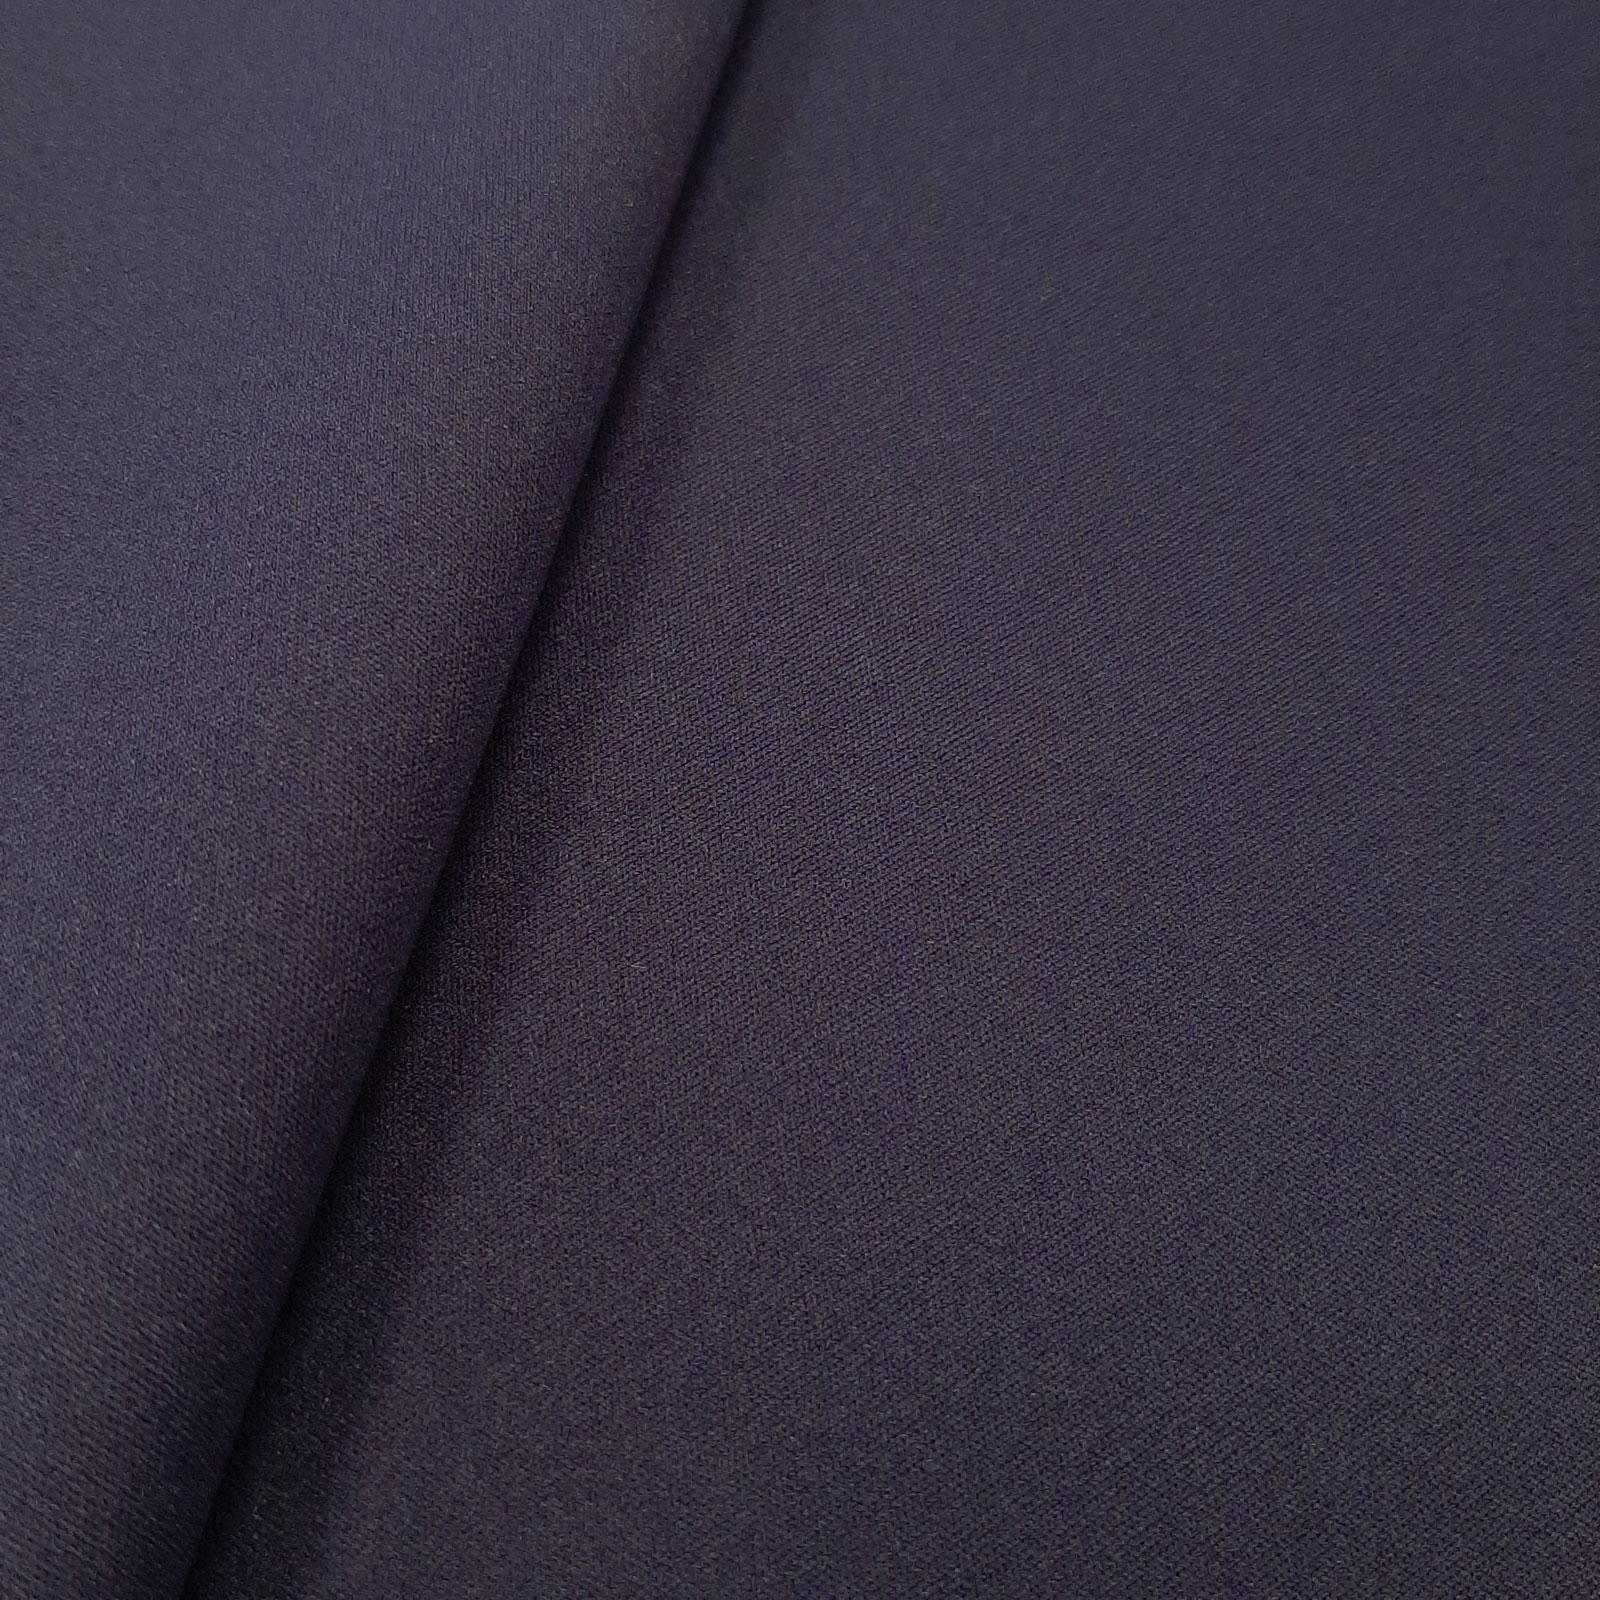 Denali - elastische softshell met klimaatmembraan - marineblauw